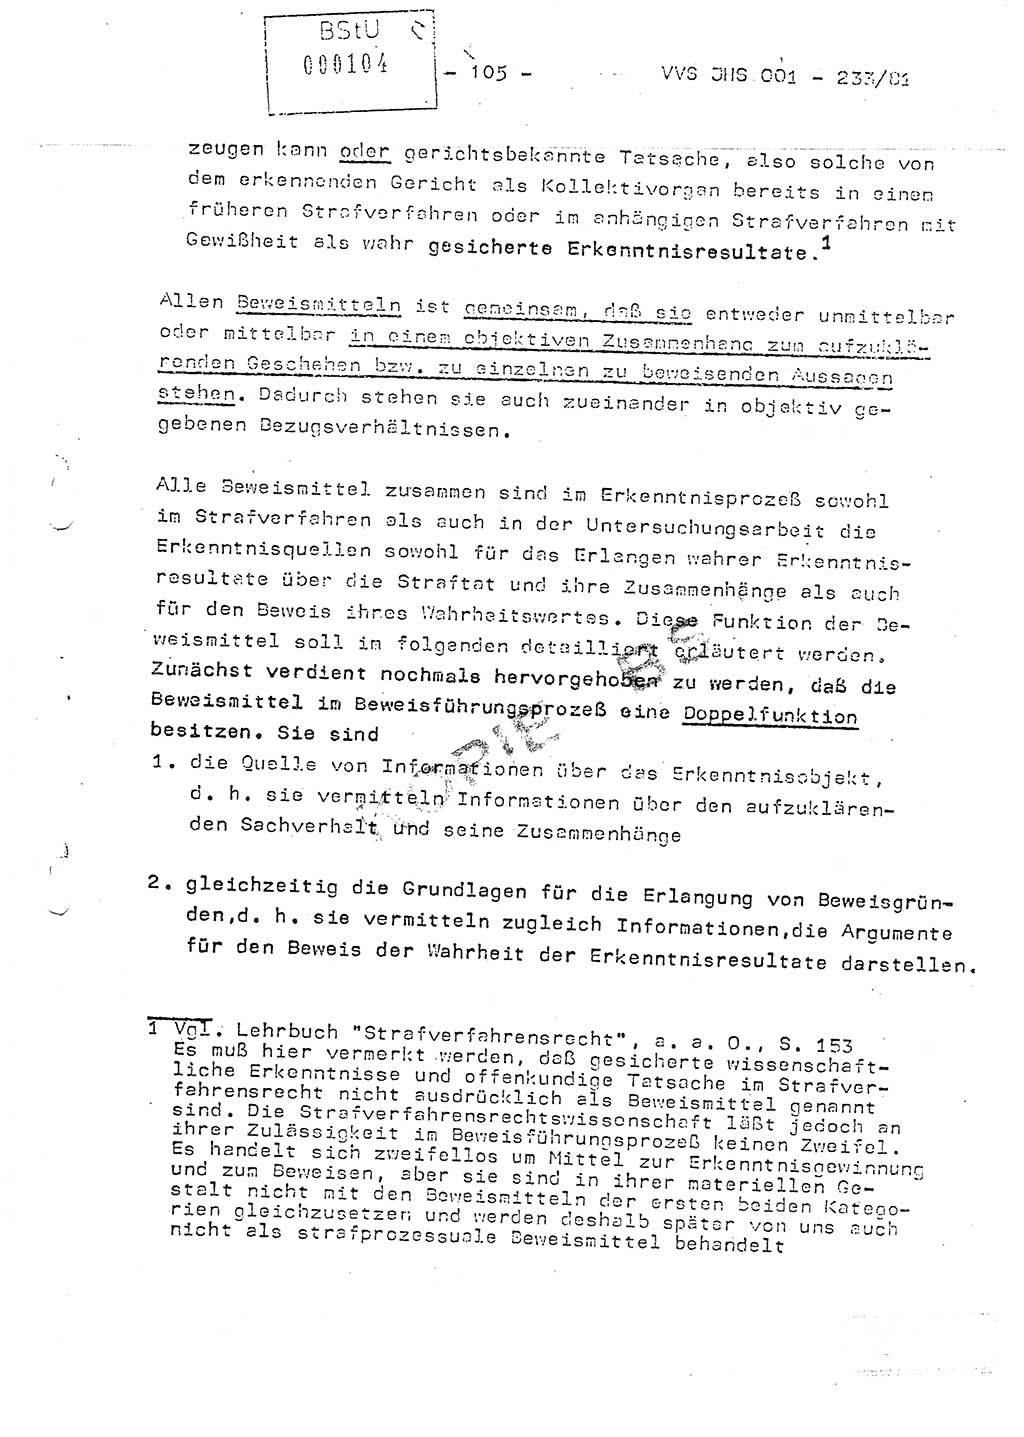 Dissertation Oberstleutnant Horst Zank (JHS), Oberstleutnant Dr. Karl-Heinz Knoblauch (JHS), Oberstleutnant Gustav-Adolf Kowalewski (HA Ⅸ), Oberstleutnant Wolfgang Plötner (HA Ⅸ), Ministerium für Staatssicherheit (MfS) [Deutsche Demokratische Republik (DDR)], Juristische Hochschule (JHS), Vertrauliche Verschlußsache (VVS) o001-233/81, Potsdam 1981, Blatt 105 (Diss. MfS DDR JHS VVS o001-233/81 1981, Bl. 105)